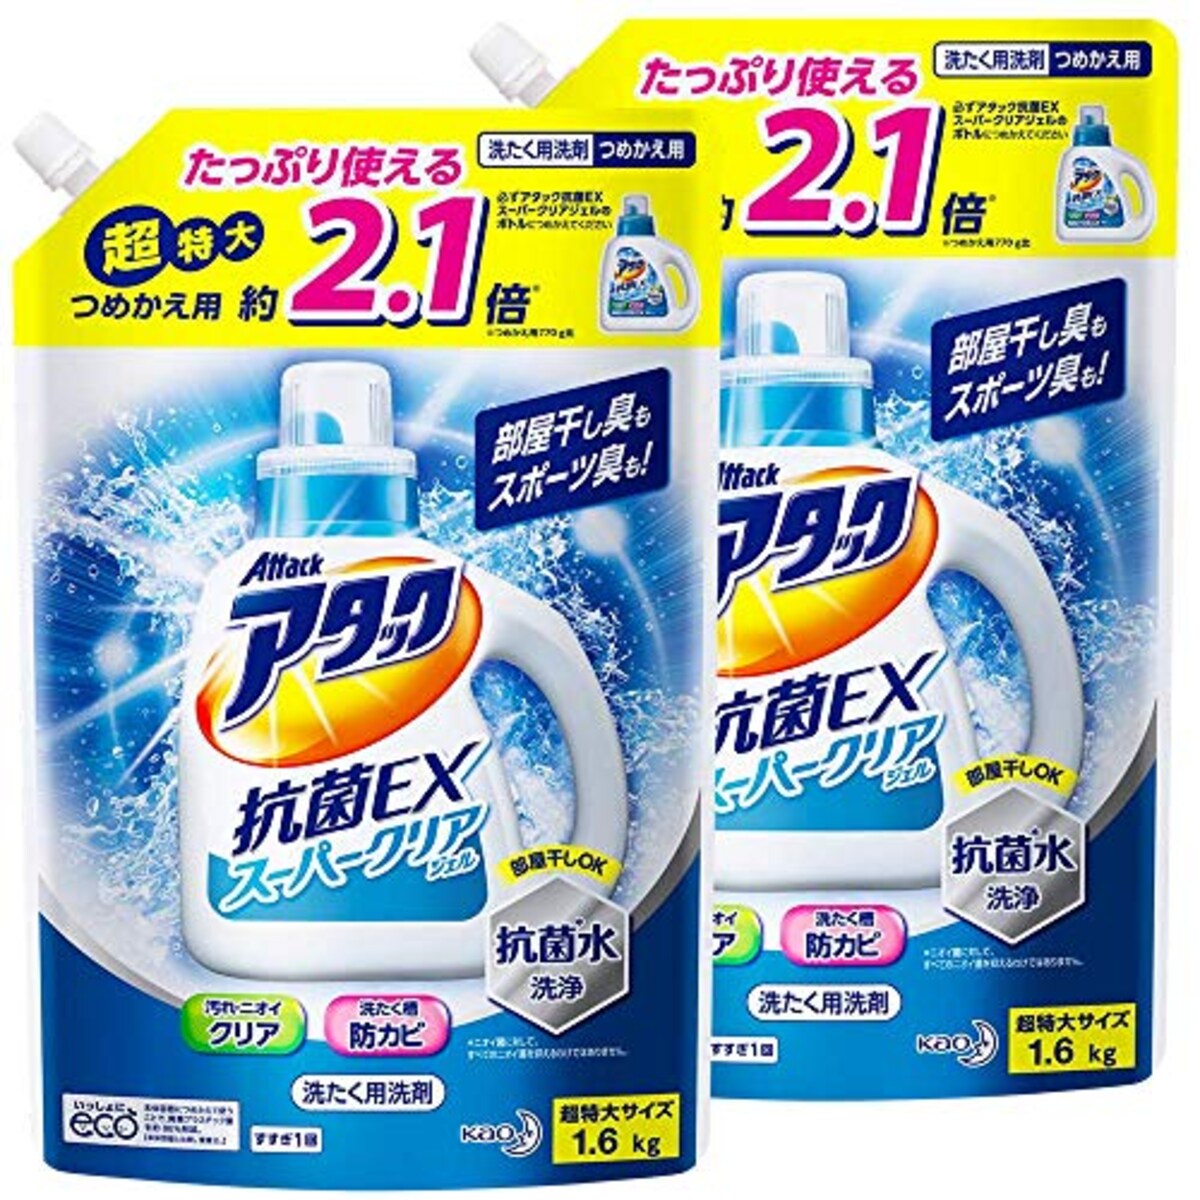 タック 抗菌EX スーパークリアジェル 洗濯洗剤 液体 詰め替え 1.6Kg×2個